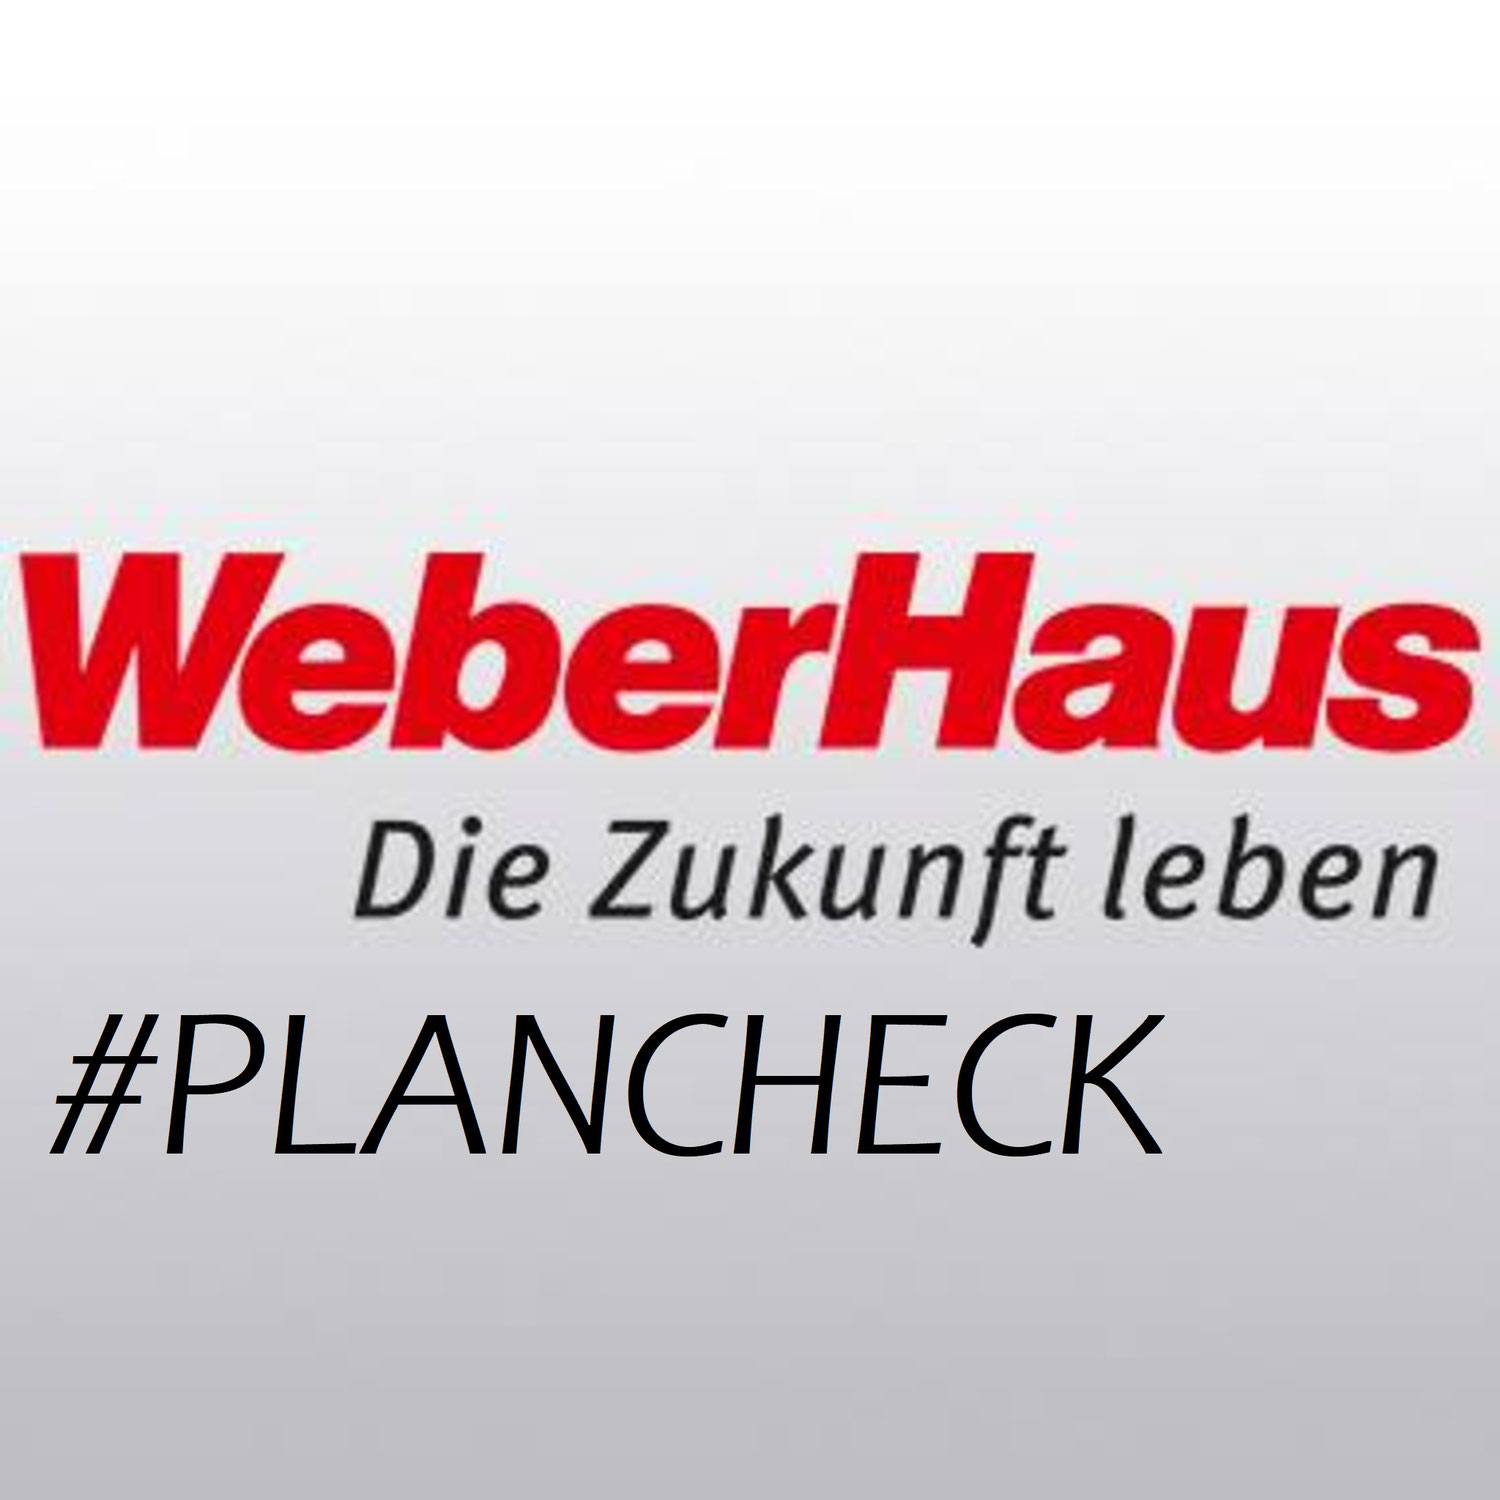 WeberHaus Plancheck abgeschlossen